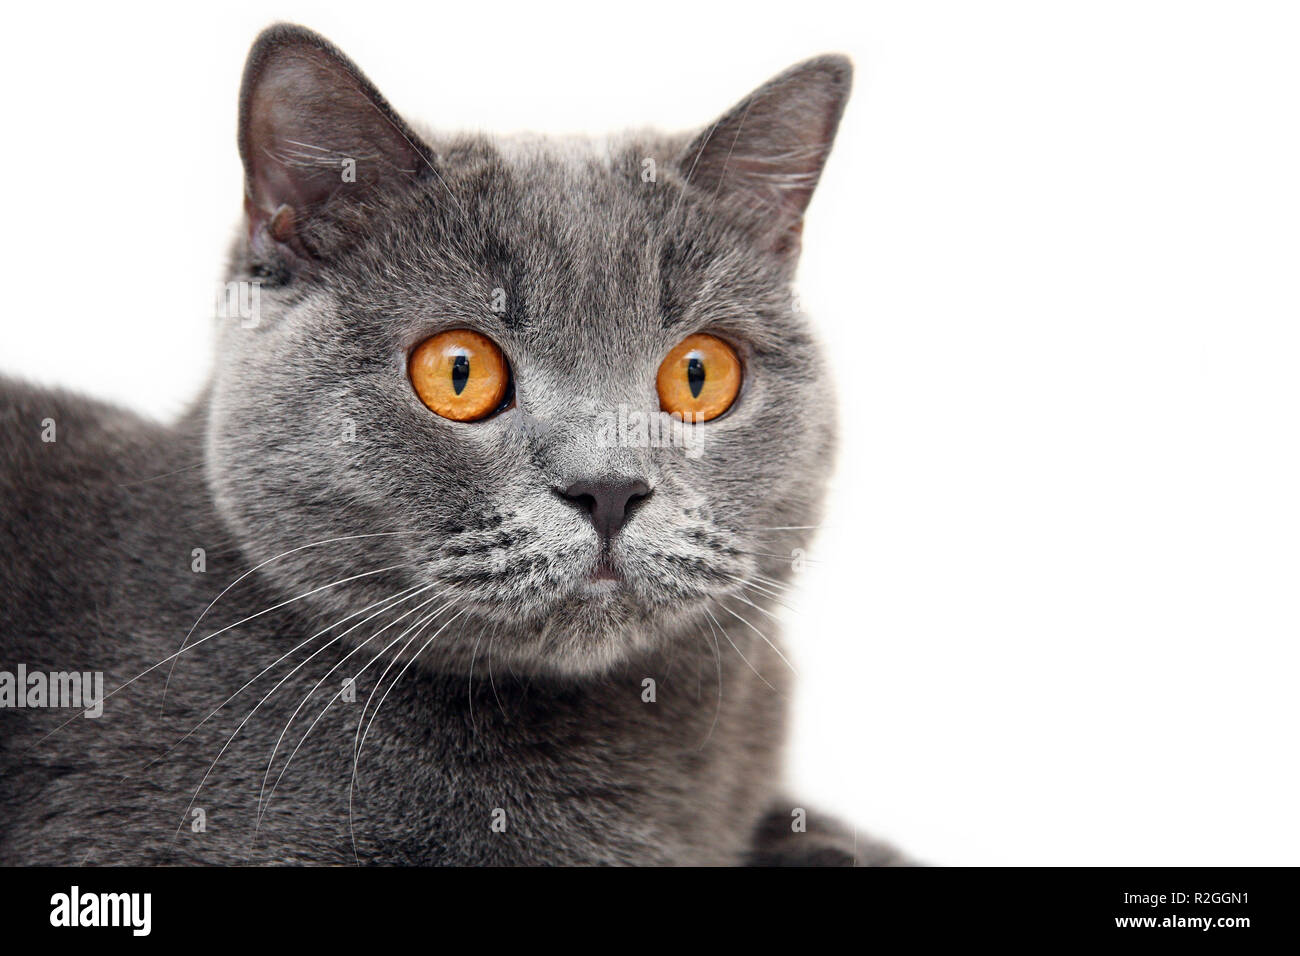 Portrait von blauen britischen Katze mit grosse orange Augen auf weißem  Hintergrund. Kopf eines britischen Katze mit orangefarbenen Augen schließen  Stockfotografie - Alamy